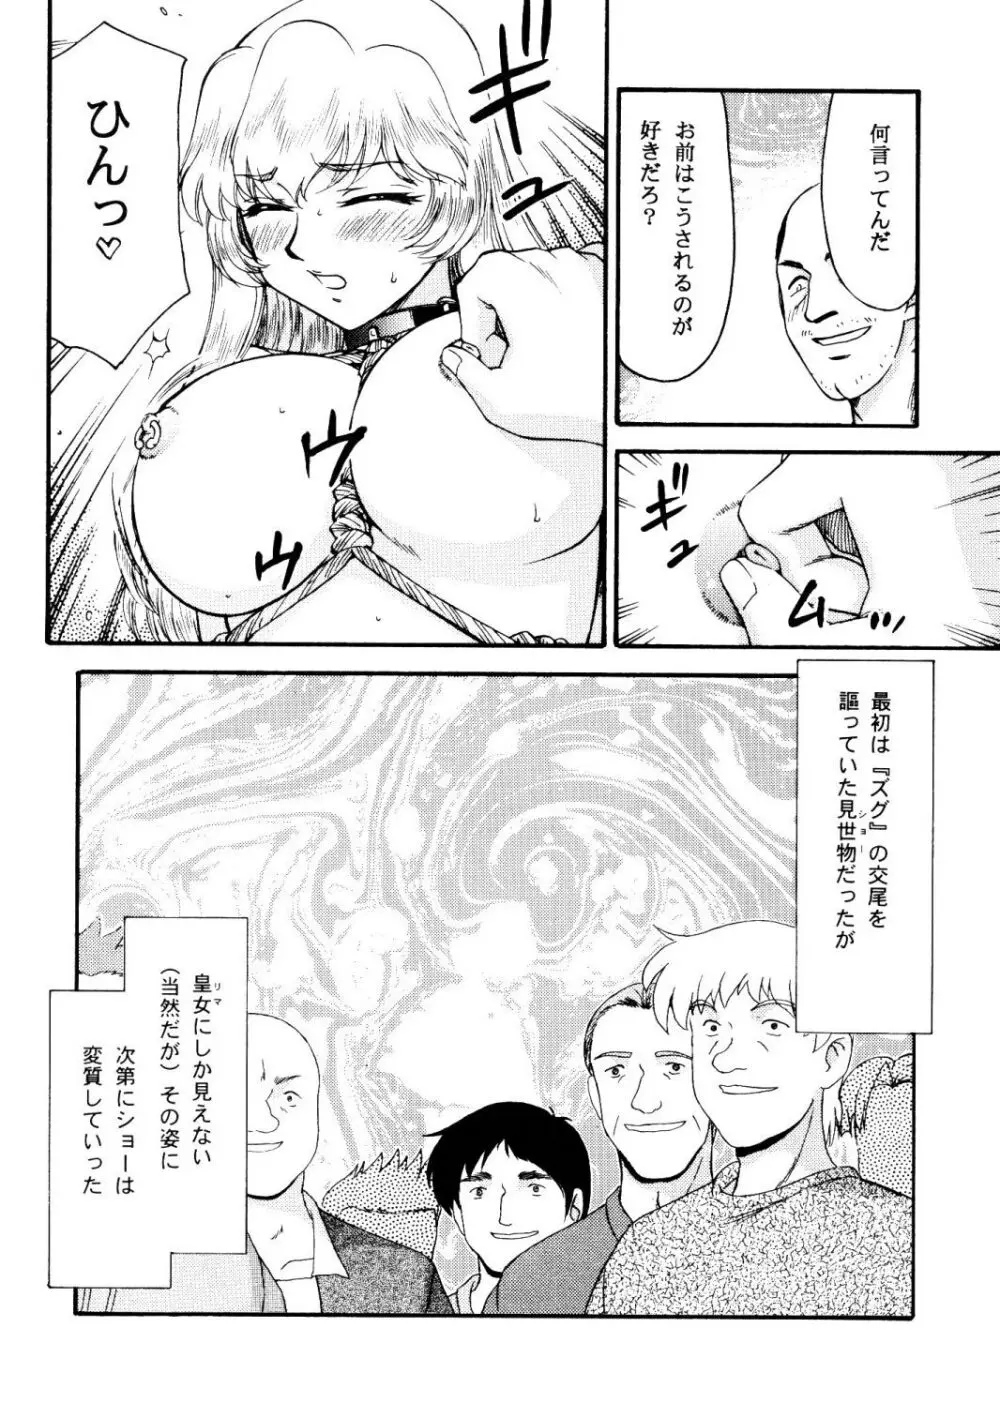 ニセ DRAGON BLOOD! 15 13ページ